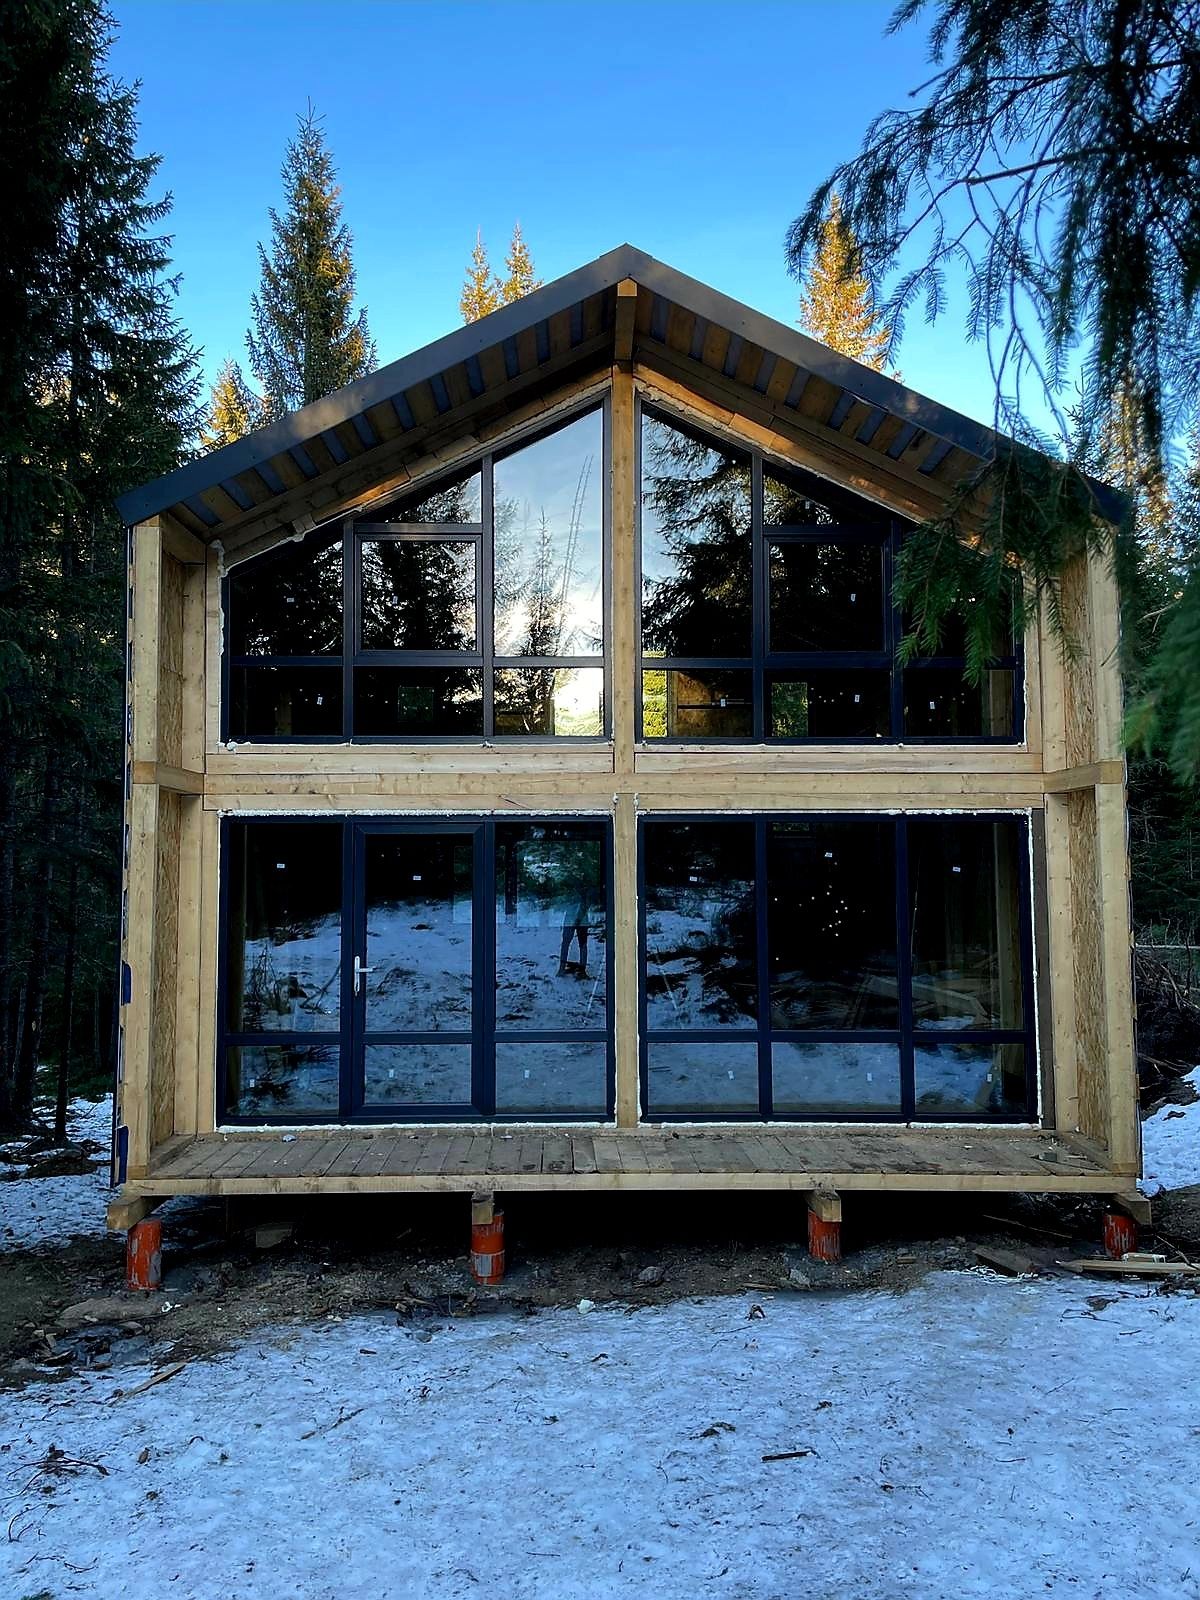 Construcții cabana lemn!